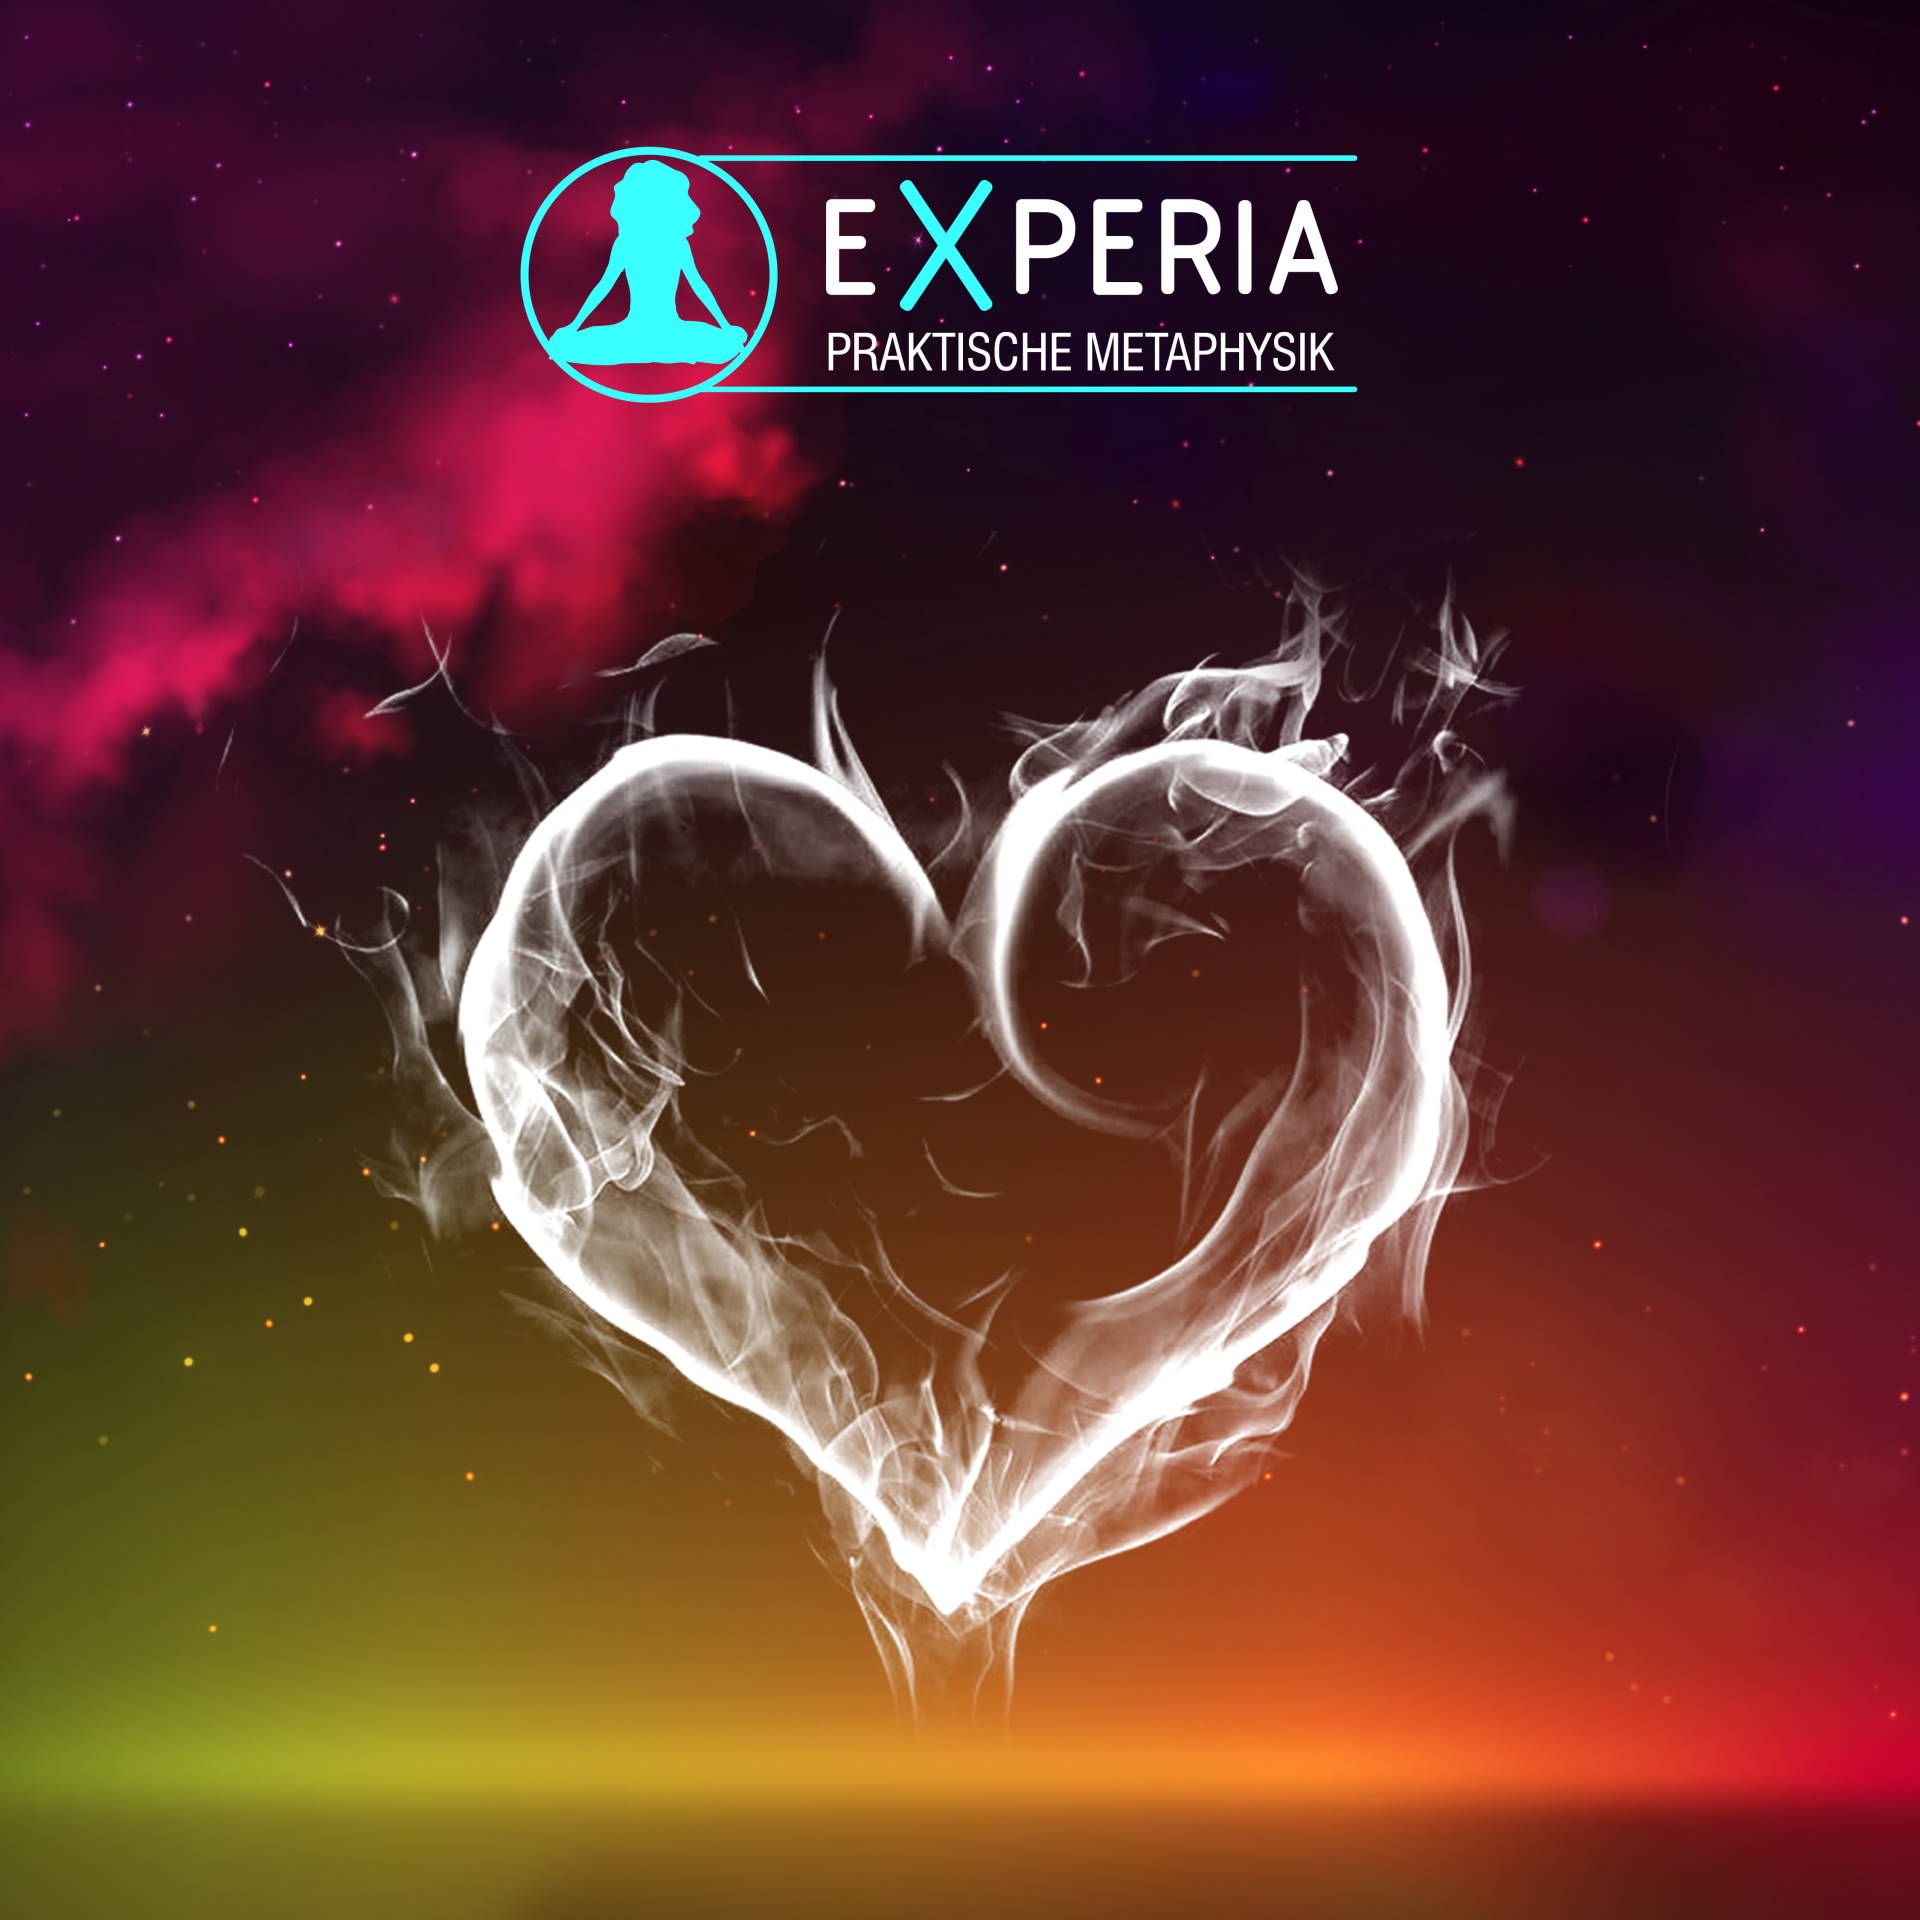 Experia - Die Oeffnung der Kraftzentren und die Geheime Kammer des Herzens